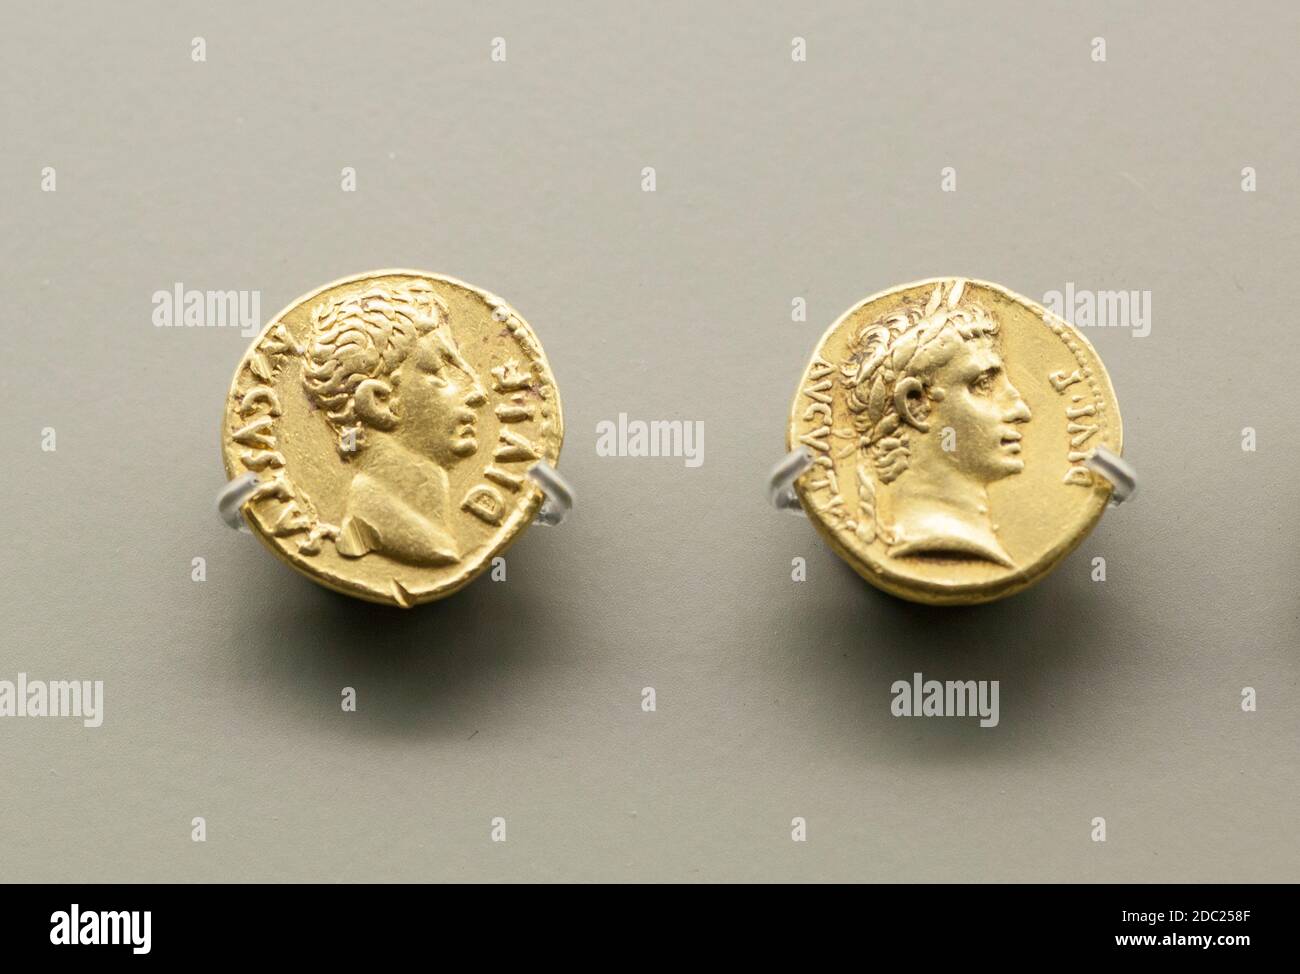 Merida, Spain - Nov 14th, 2020: Octavius Augustus Roman Emperor coins. National Museum of Roman Art in Merida, Spain Stock Photo